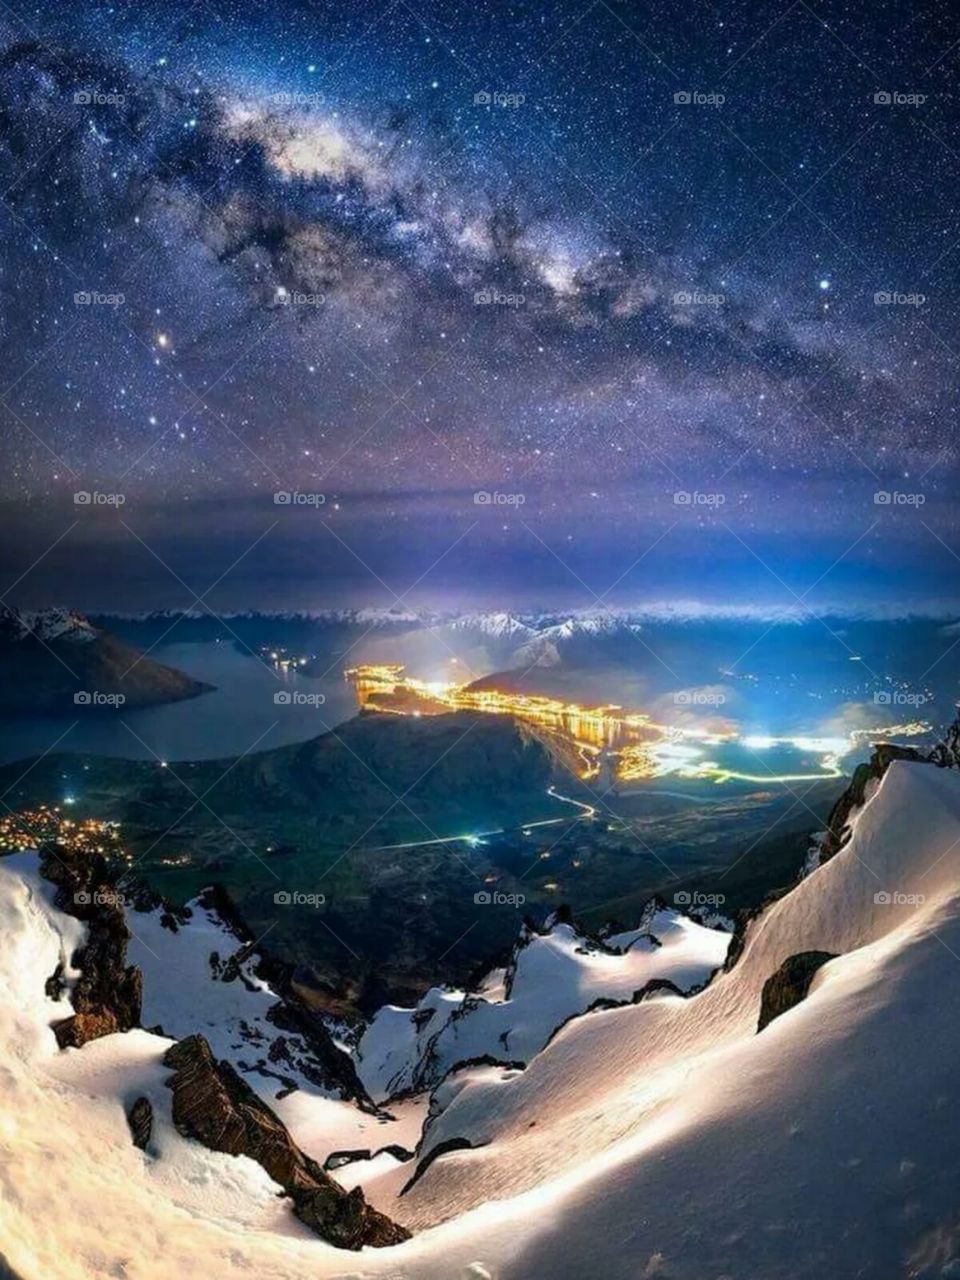 The Milky Way over Queenstown, New Zealand